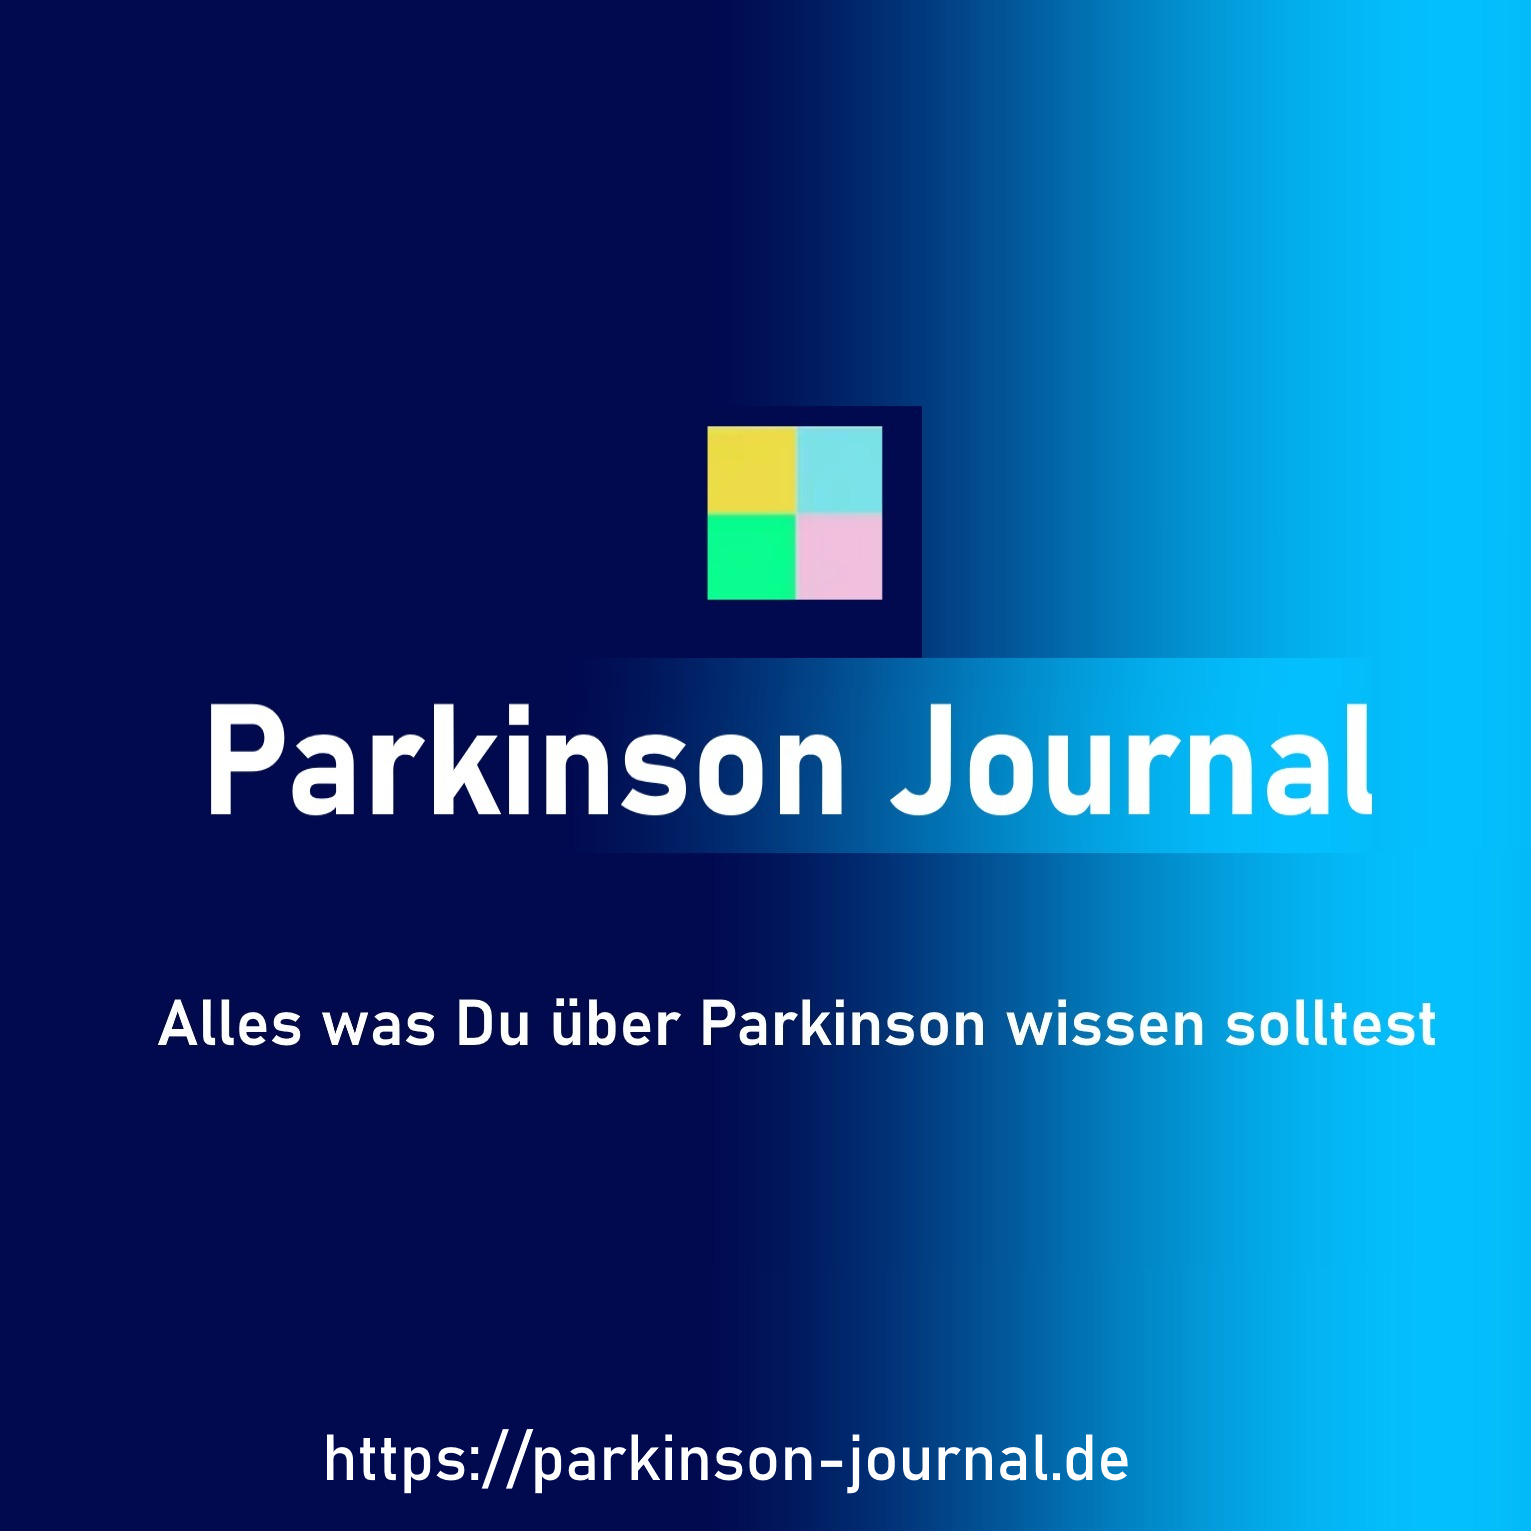 Parkinson Journal